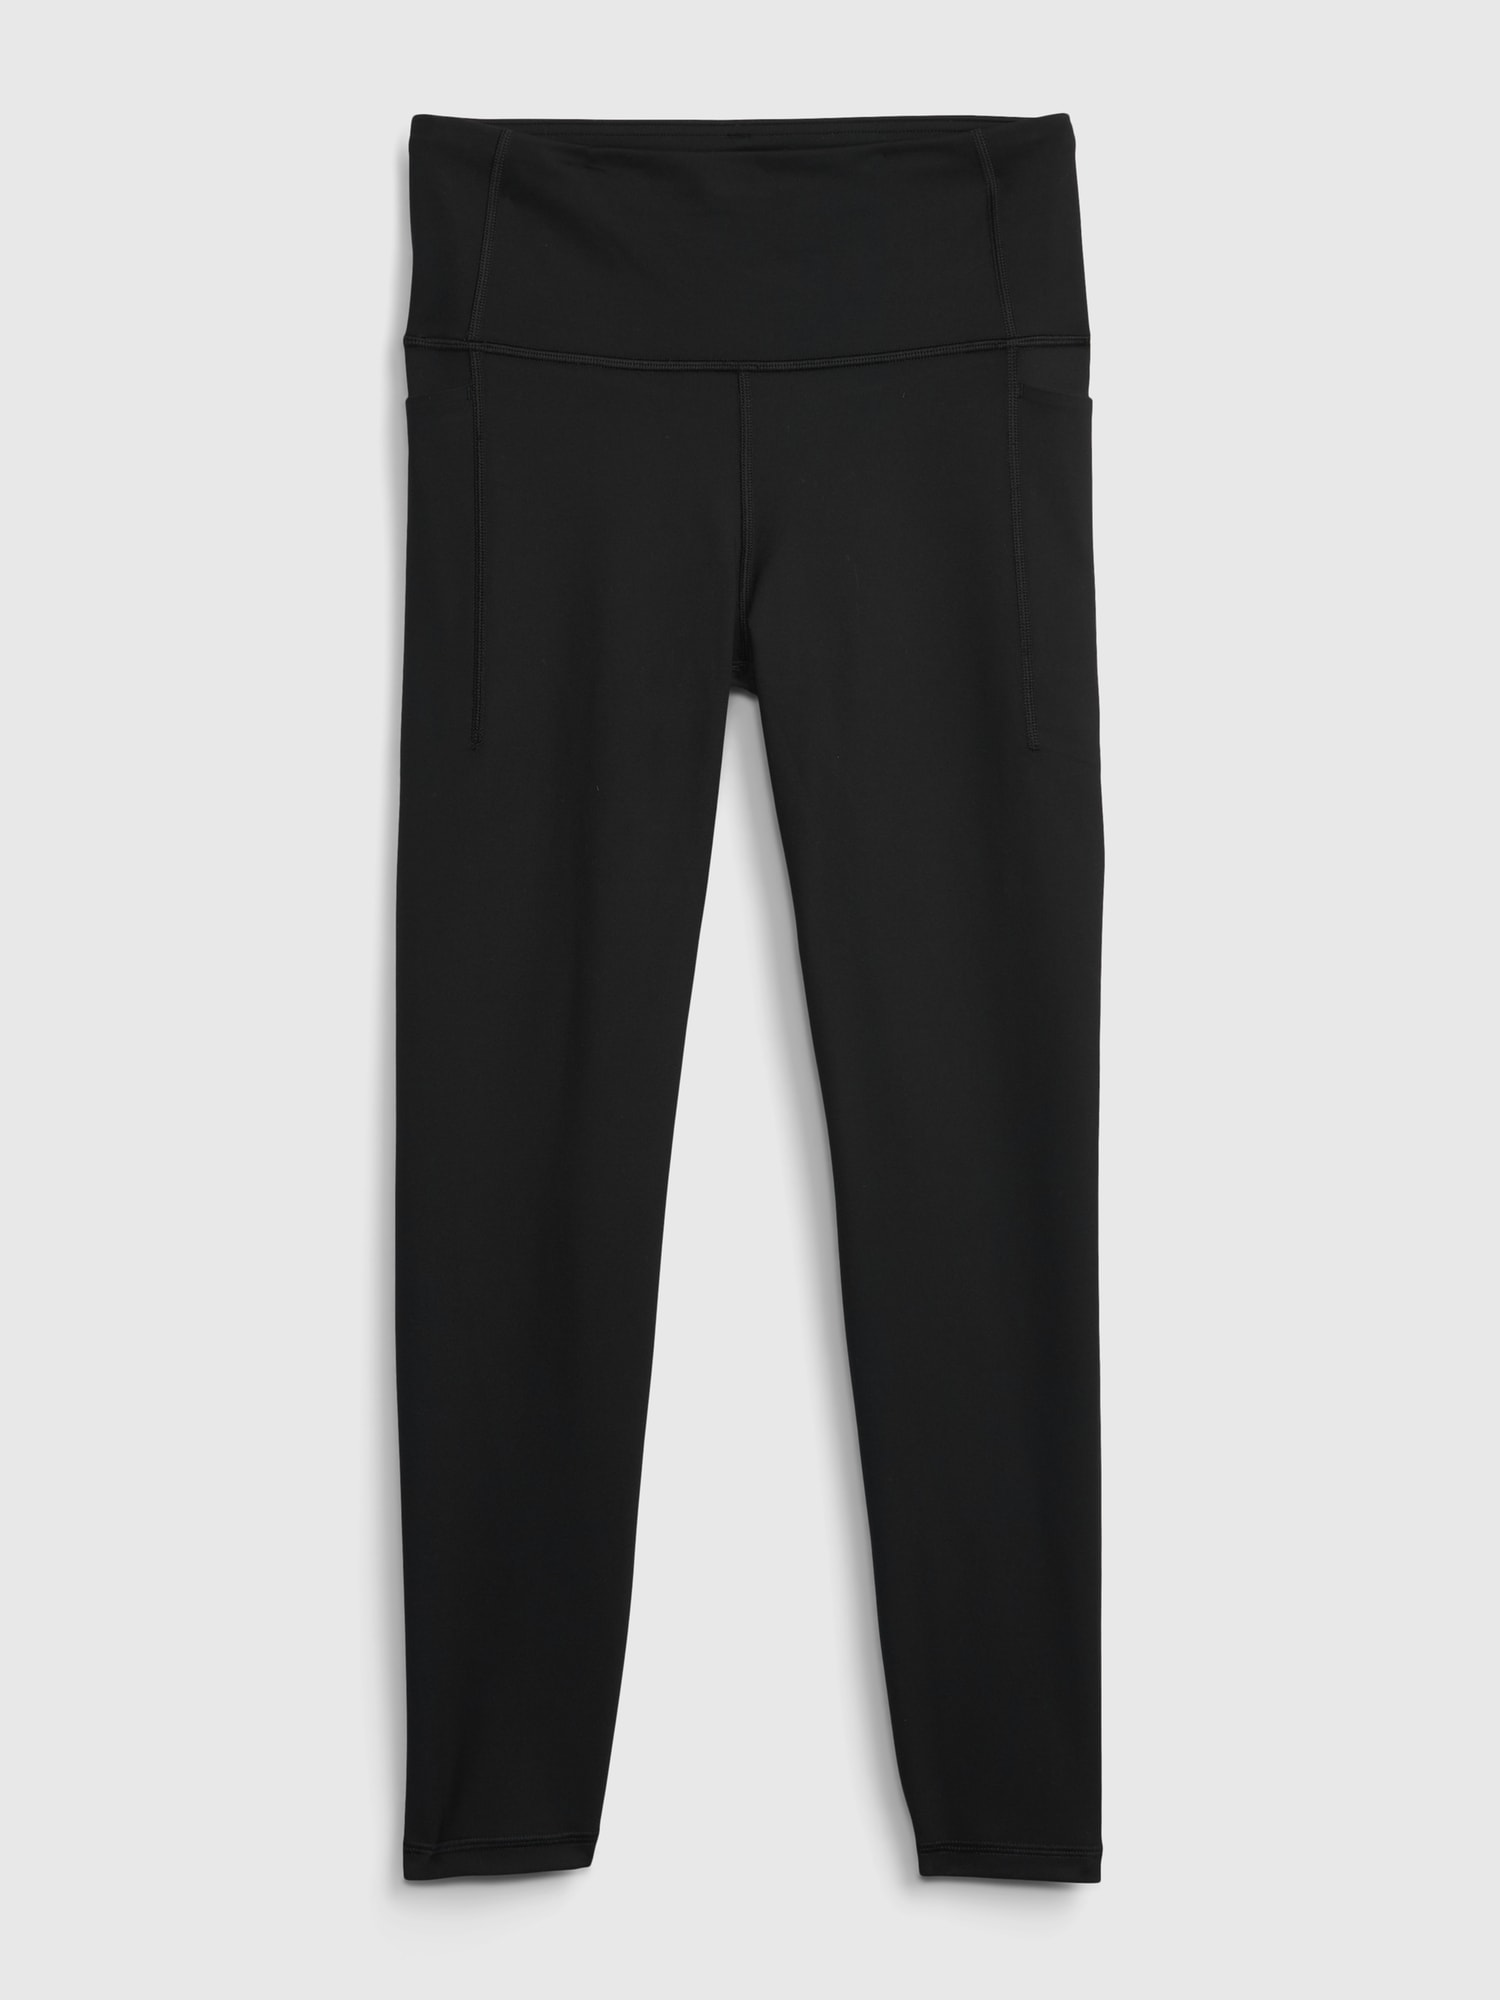  880882-21 Legíny GapFit high rise Černá - Women's high  waisted leggings - GAP - 54.90 € - outdoorové oblečení a vybavení shop